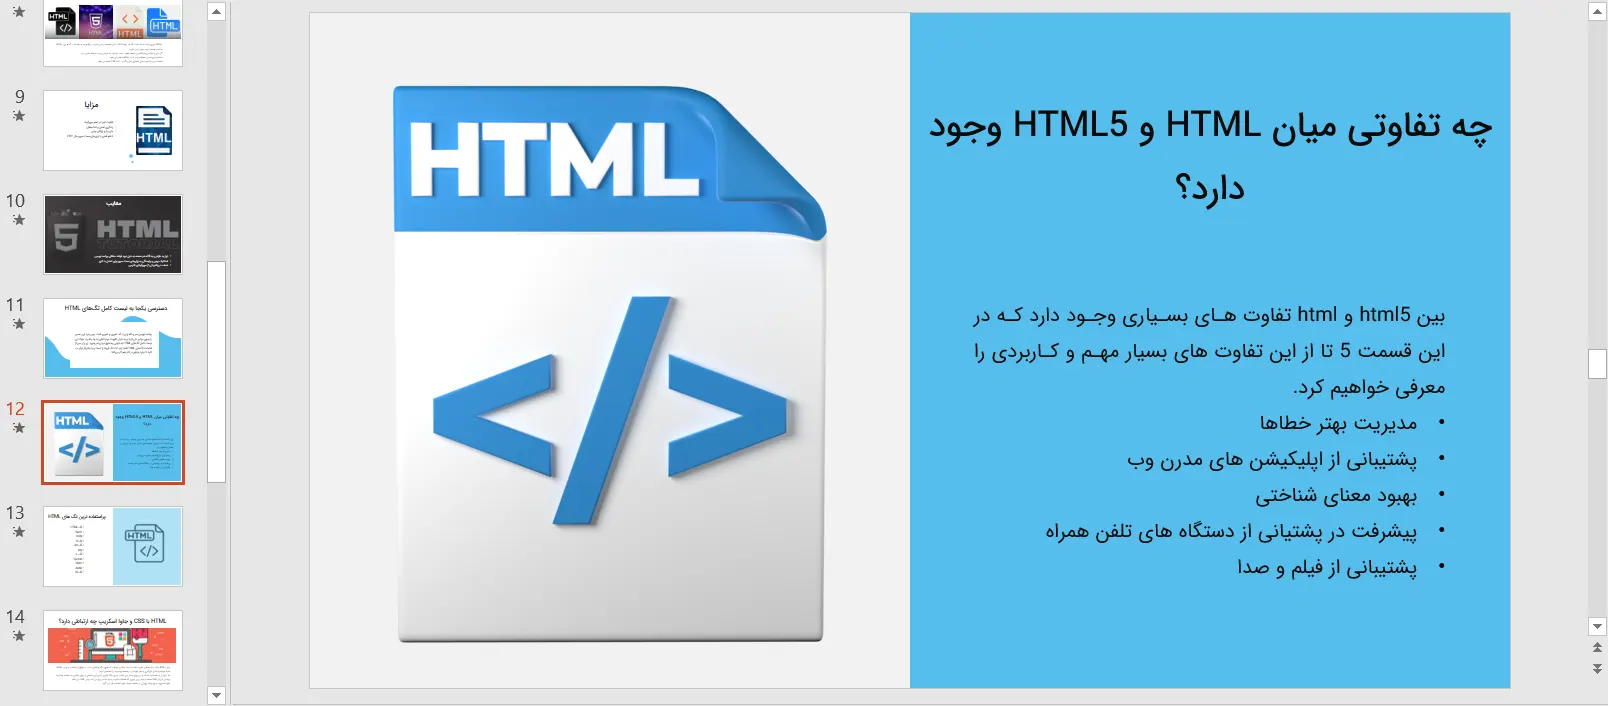 پاورپوینت معرفی زبان HTML